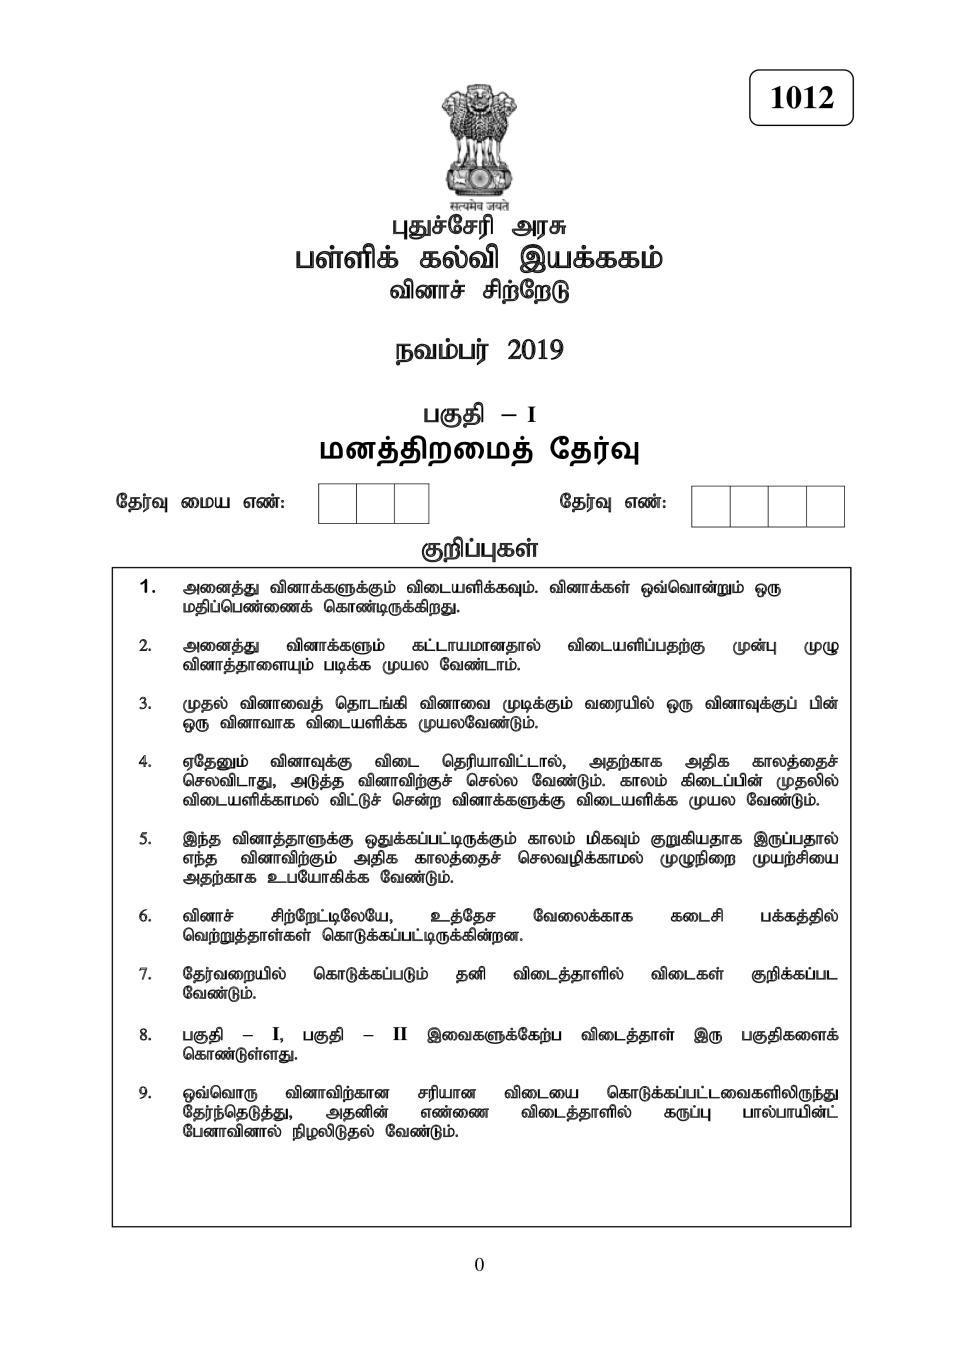 Pondicherry NTSE 2019-20 MAT Question Paper - Page 1